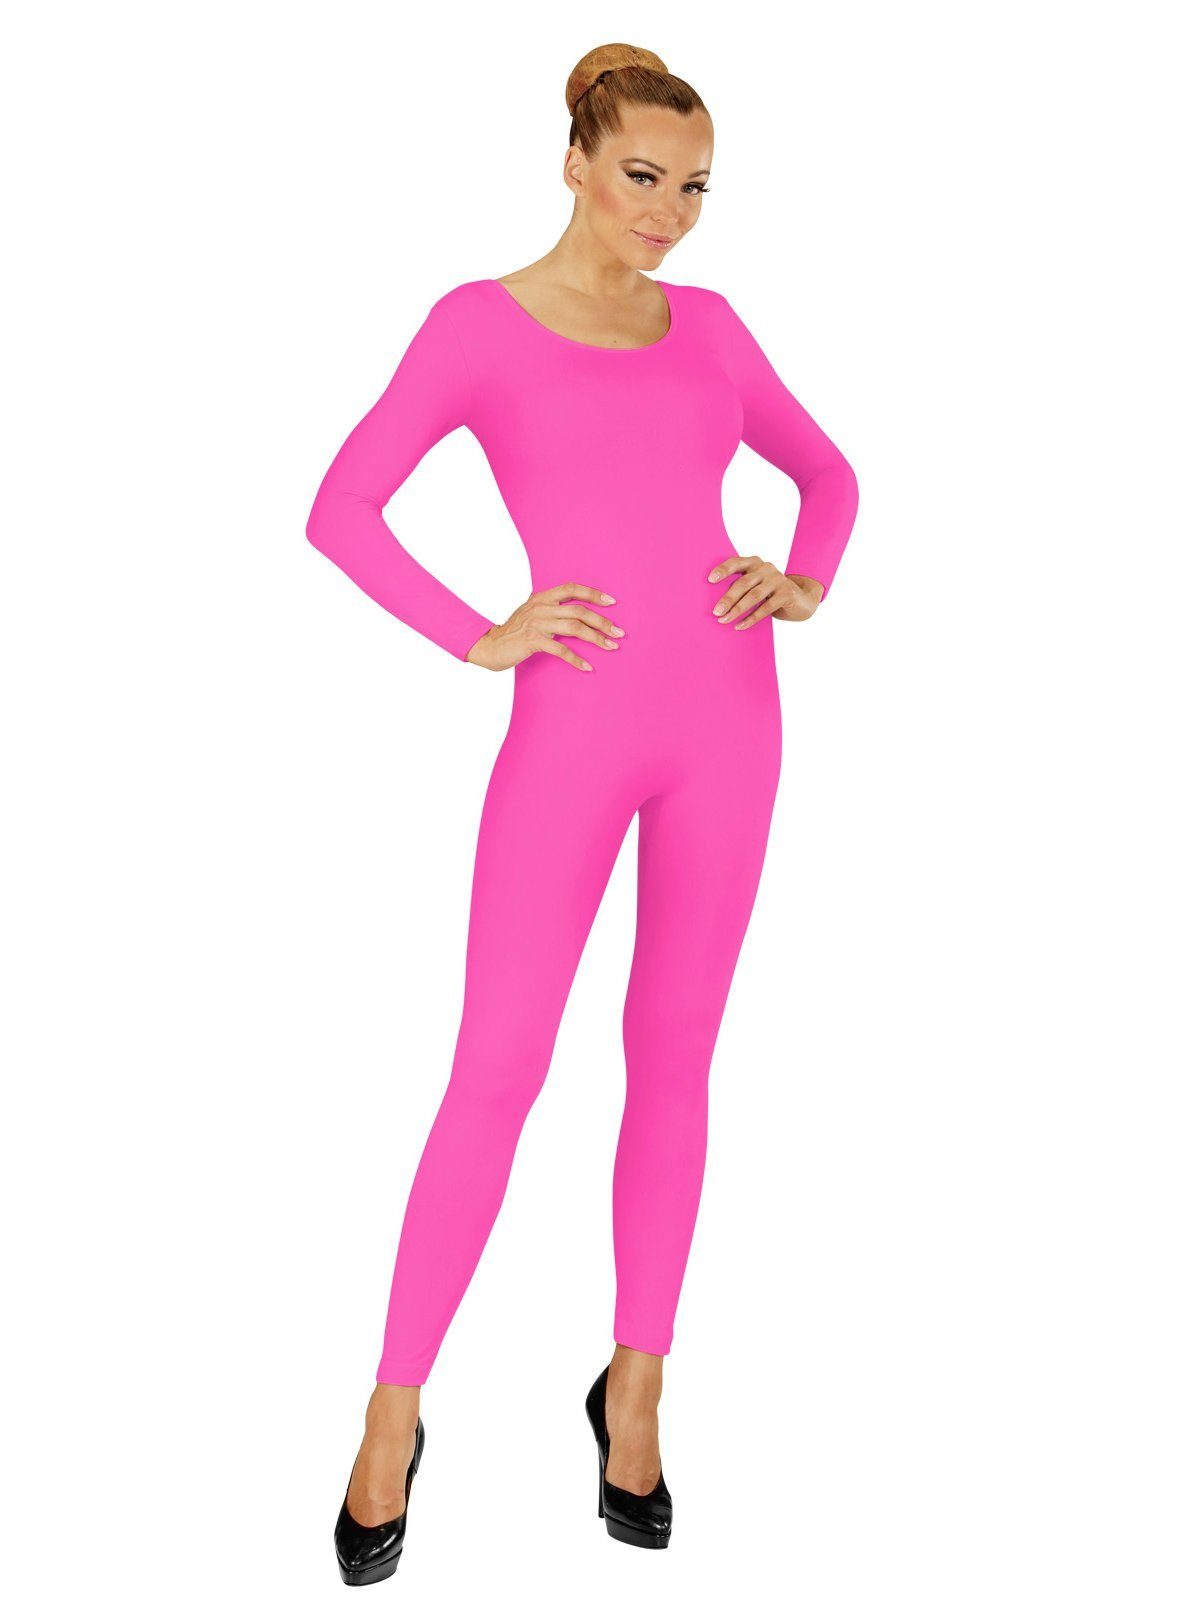 Widdmann Kostüm Langer Body neon-pink, Einfarbige Basics zum individuellen Kombinieren